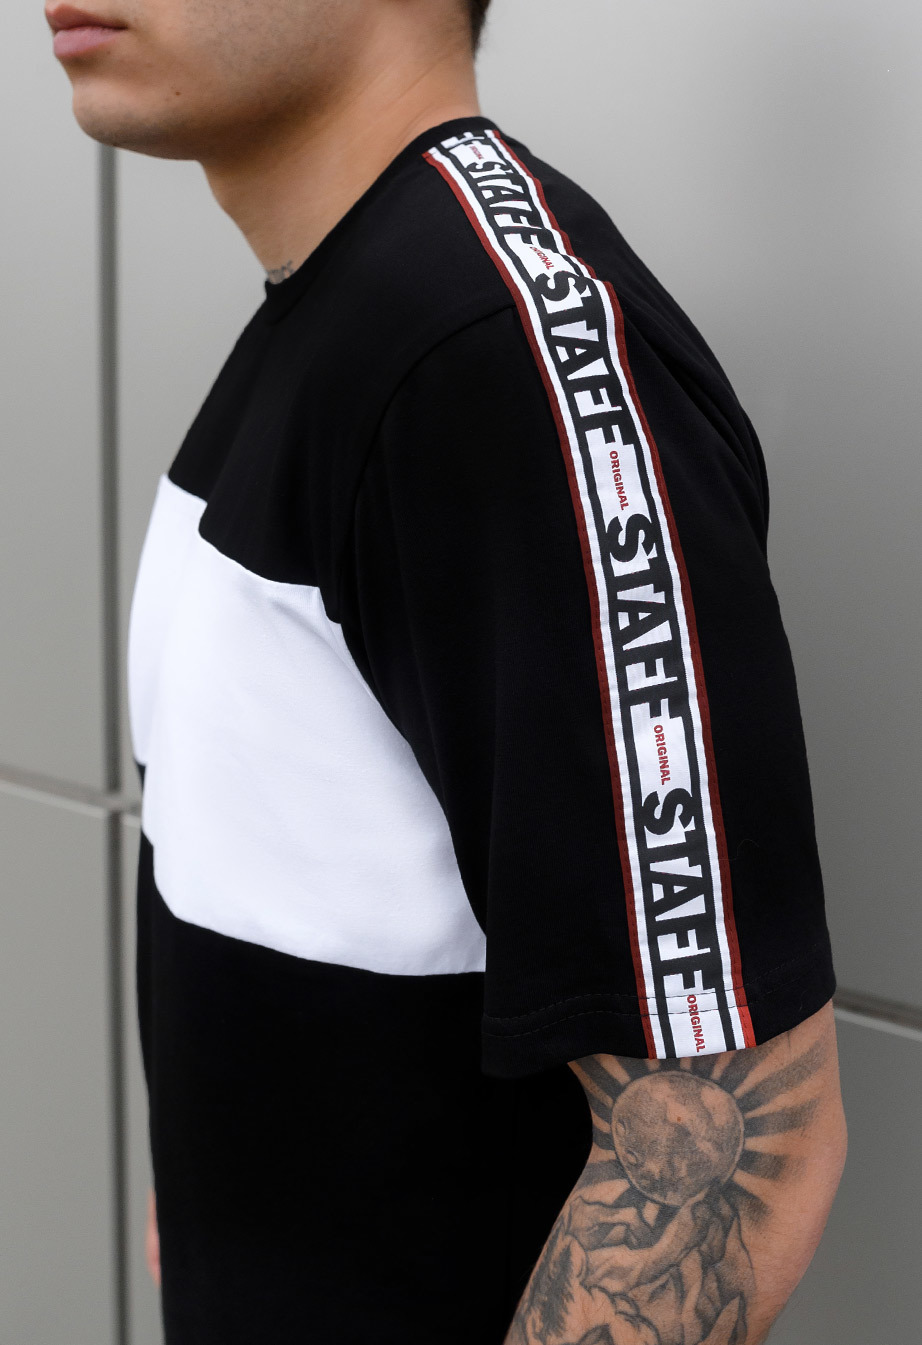 Letni komplet: koszulka + szorty Staff fio black & white3